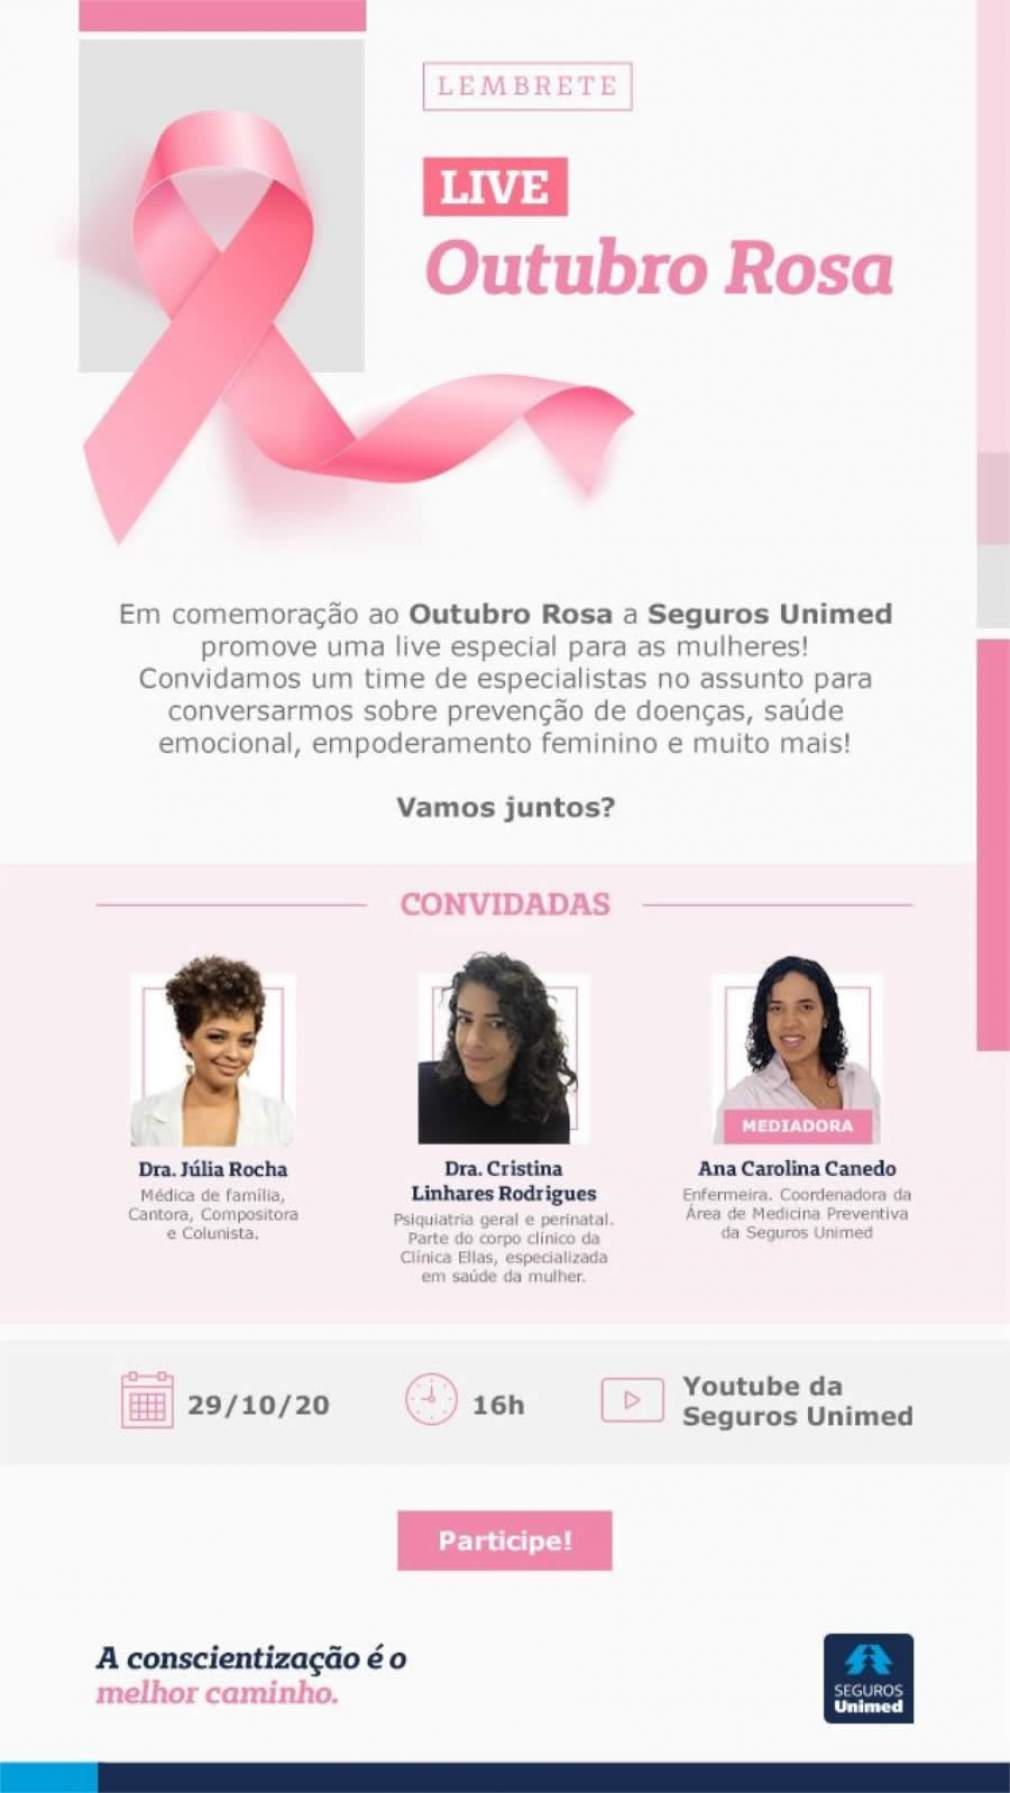 Seguros Unimed convida: Outubro Rosa - Live sobre prevenção de doenças, saúde emocional e muito mais!